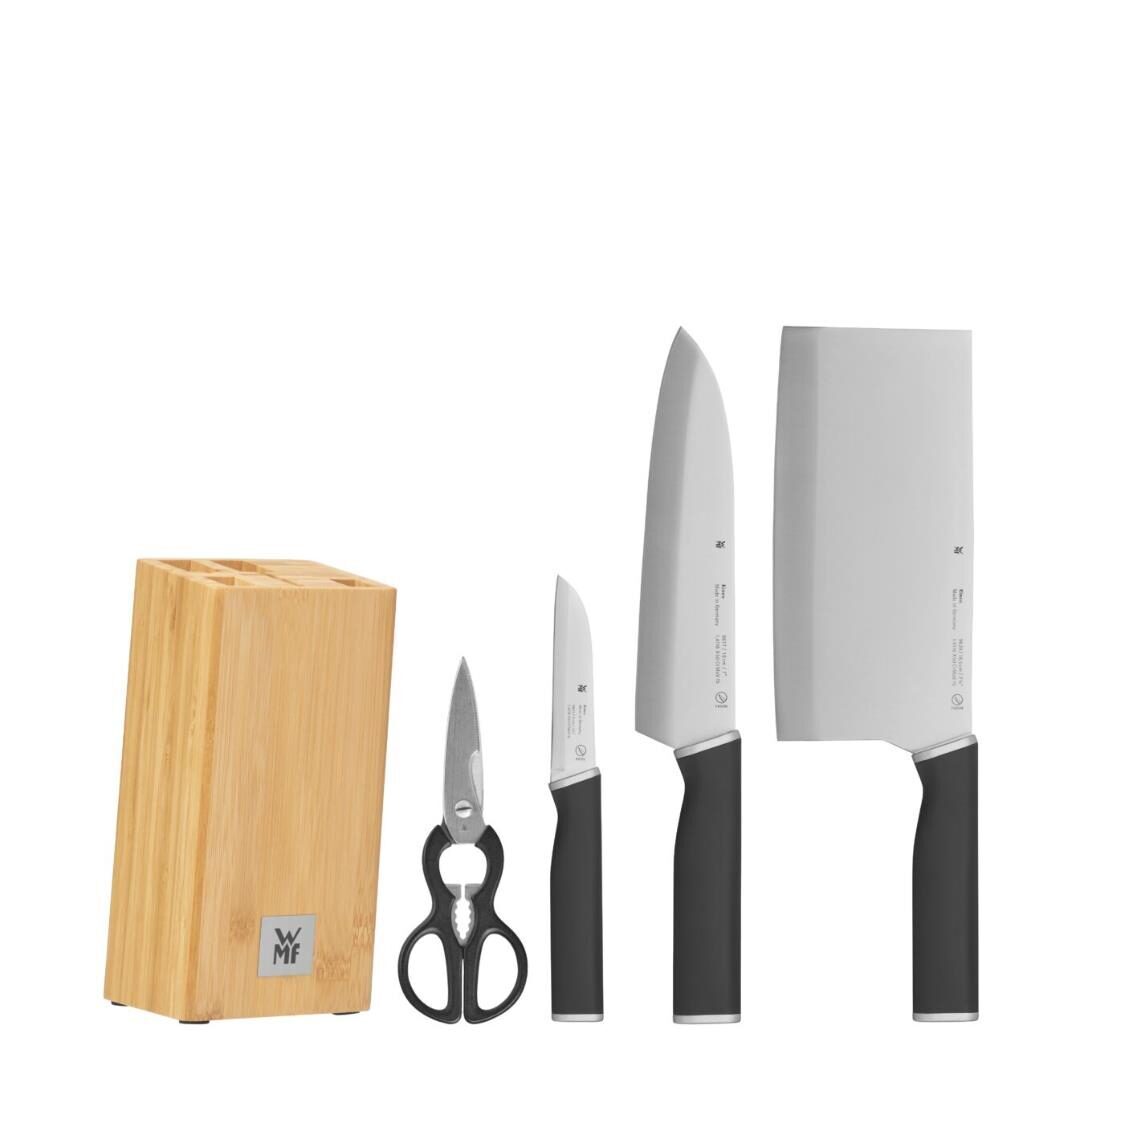 WMF Kineo Messerblock Asian Knife Block Set 5pcs 1896459992